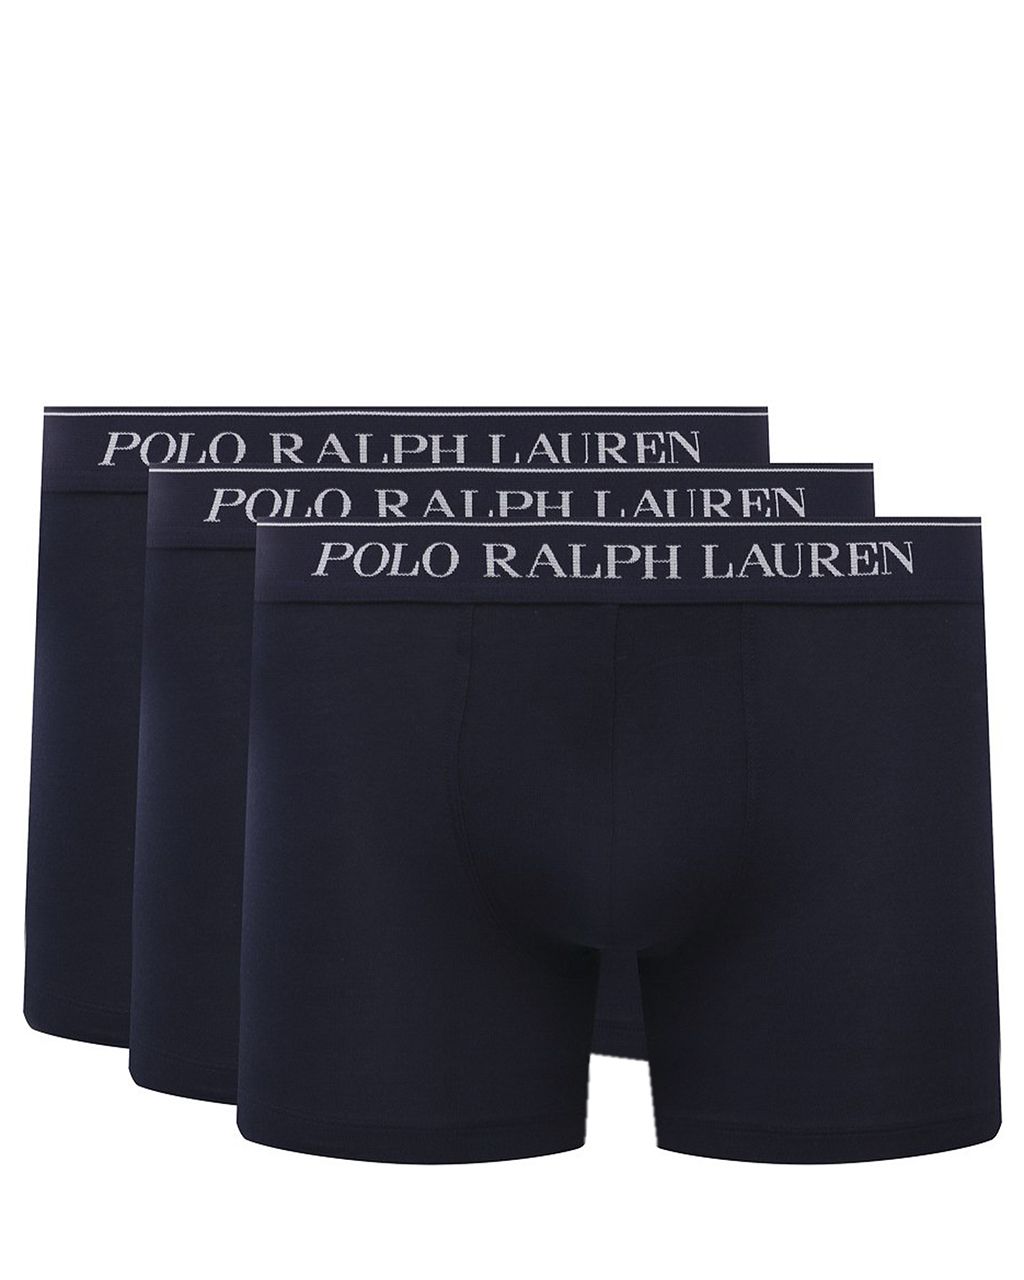 Polo Ralph Lauren Boxershort Donker blauw 078604-001-L